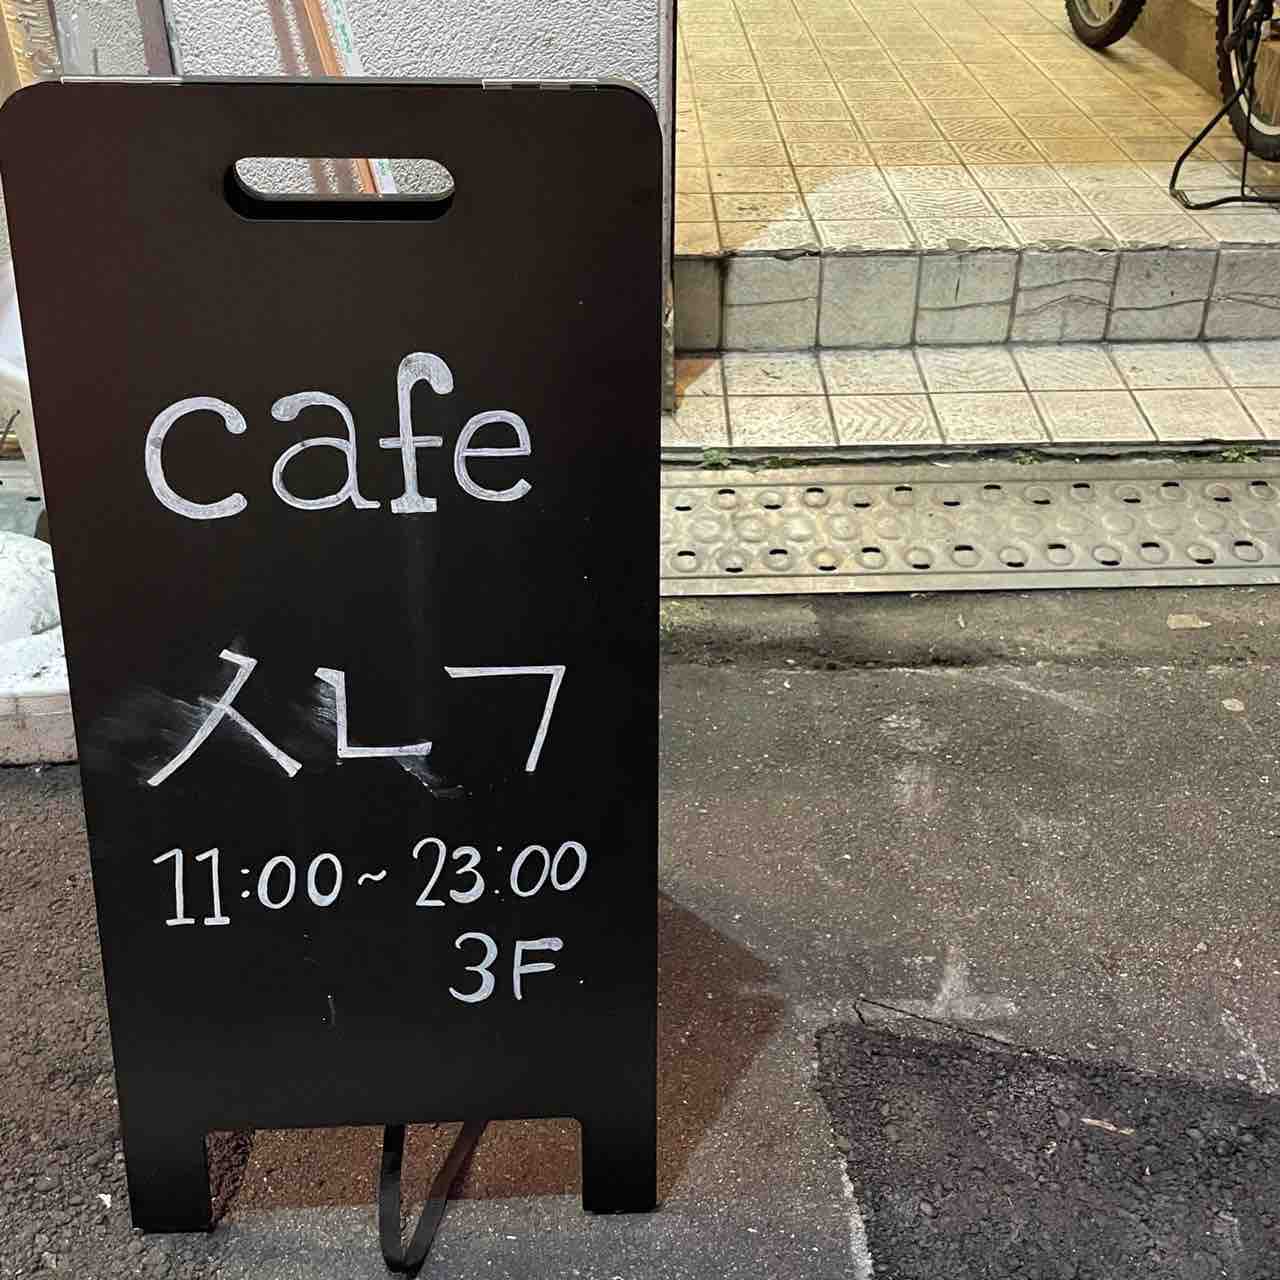 心斎橋に新オープン なんば駅近くの韓国カフェ Cafe Sonagi のぷっくりお皿に乗ったスイーツがとっても可愛い 大阪つーしん 大阪市の地域情報サイト